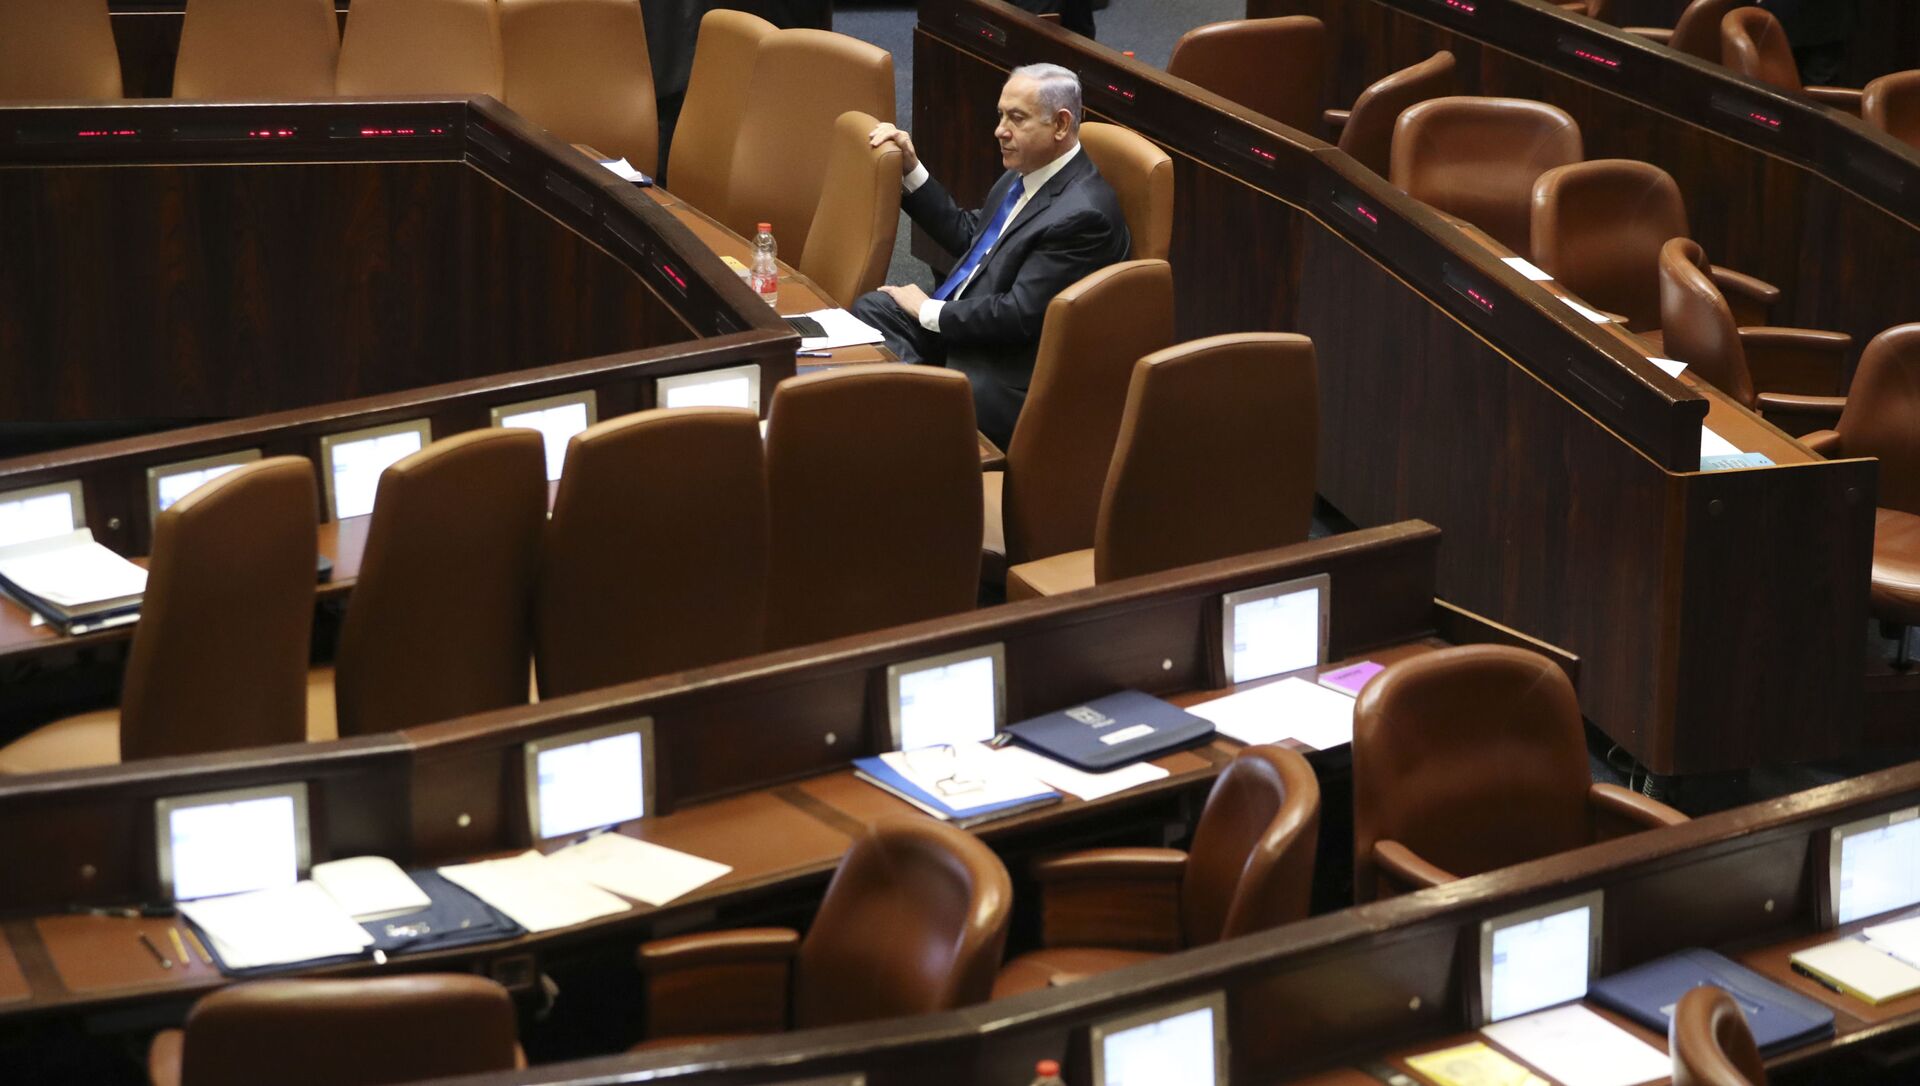 Премьер-министр Израиля Биньямин Нетаньяху сидит во время заседания Кнессета в Иерусалиме в воскресенье, 13 июня 2021 года - Sputnik Азербайджан, 1920, 14.06.2021